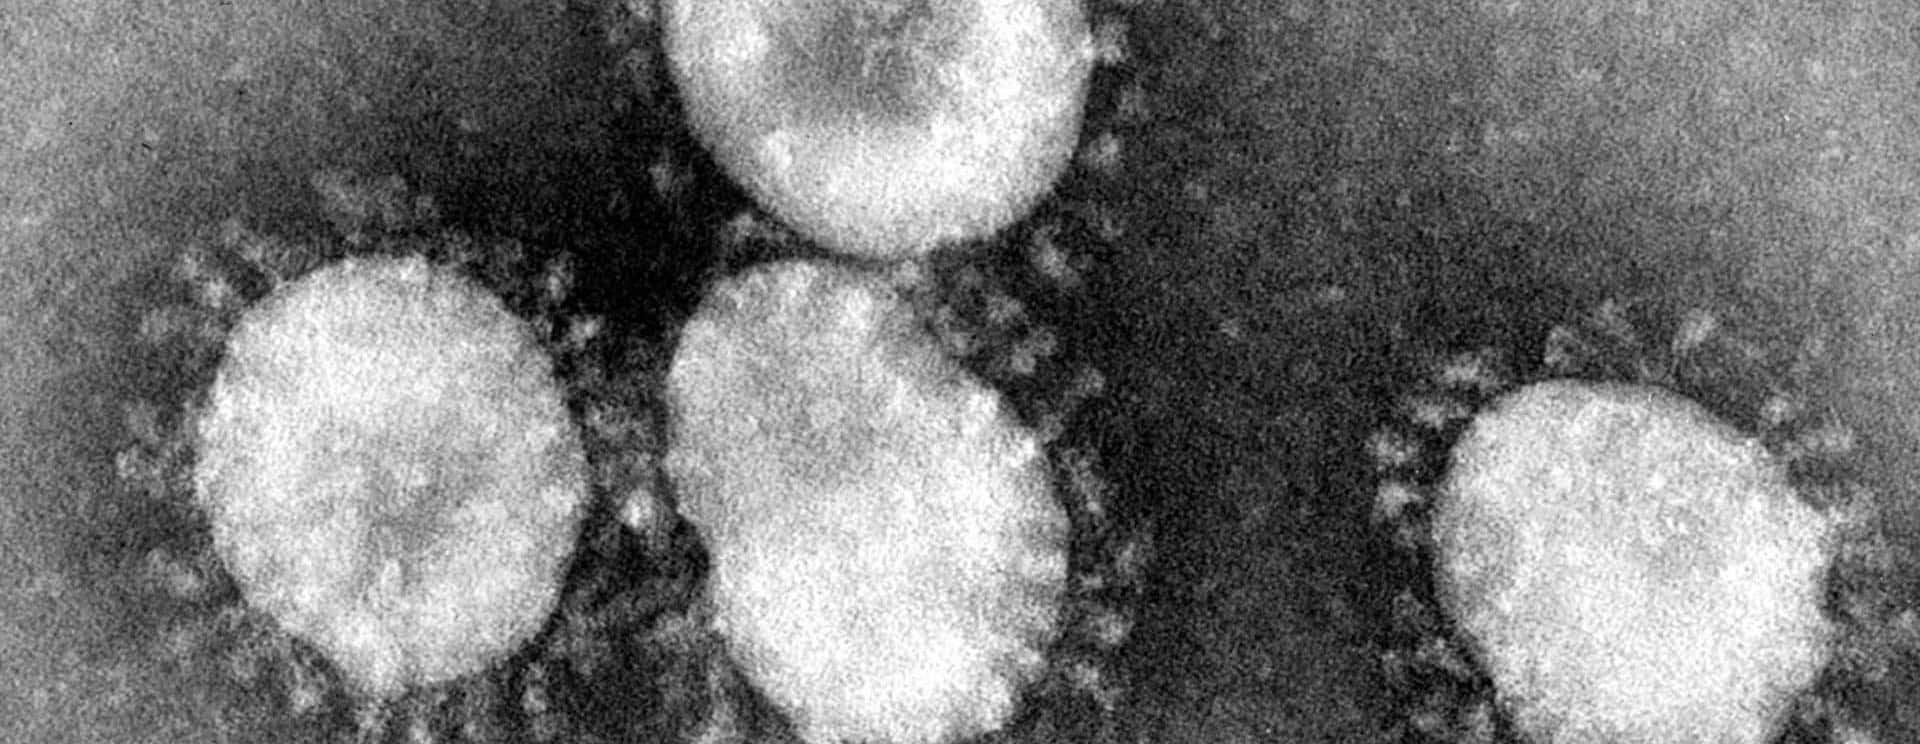 coronaviruses-jpg-26